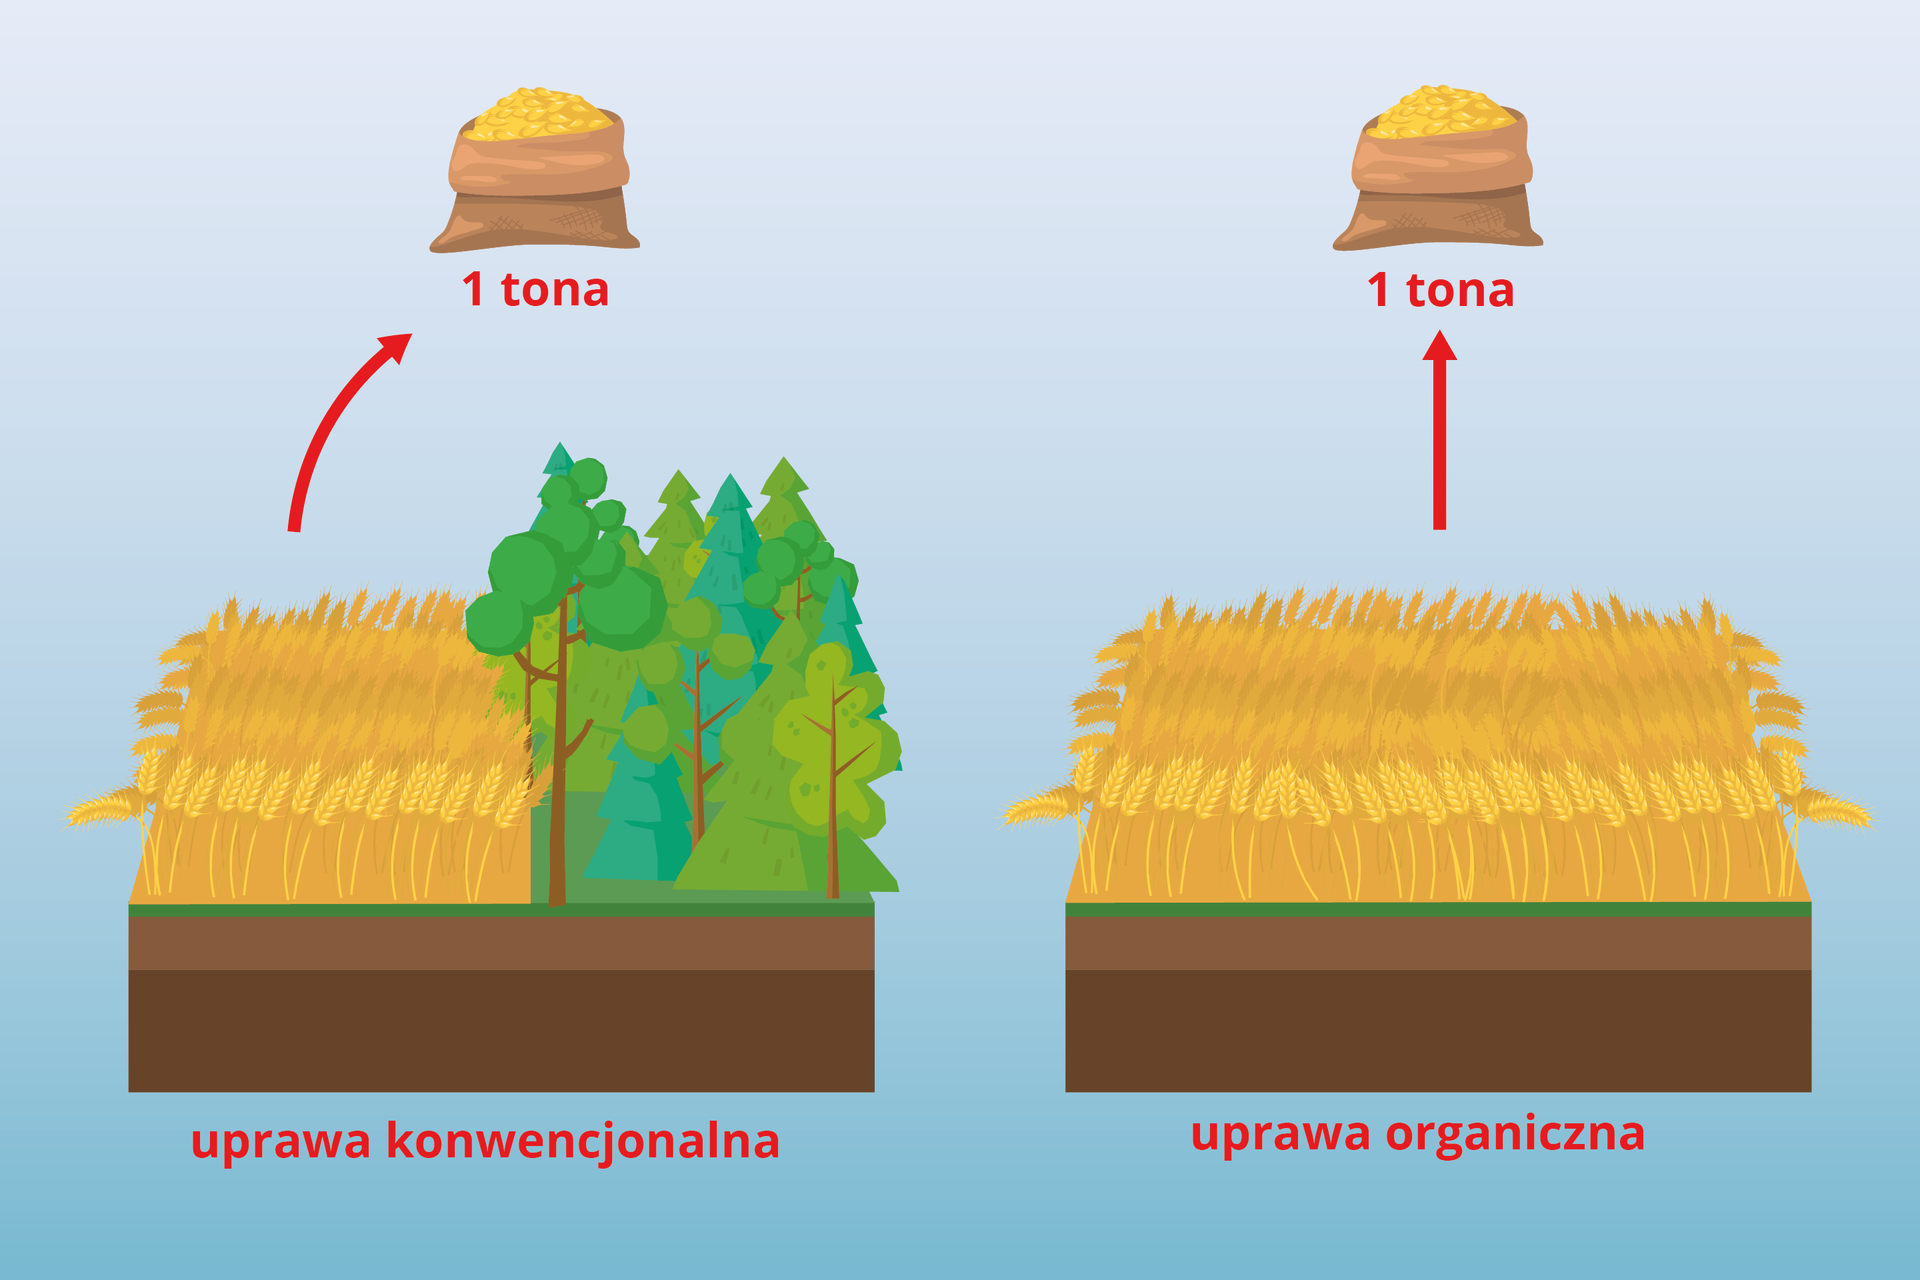 Porównanie wydajności uprawy konwencjonalnej i organicznej. Aby otrzymać tonę produktu z uprawy organicznej potrzeba dwa razy więcej pola niż dla uprawy konwencjonalnej, co idzie za koniecznością wycinki drzew, czyli też większej emisji CO2.